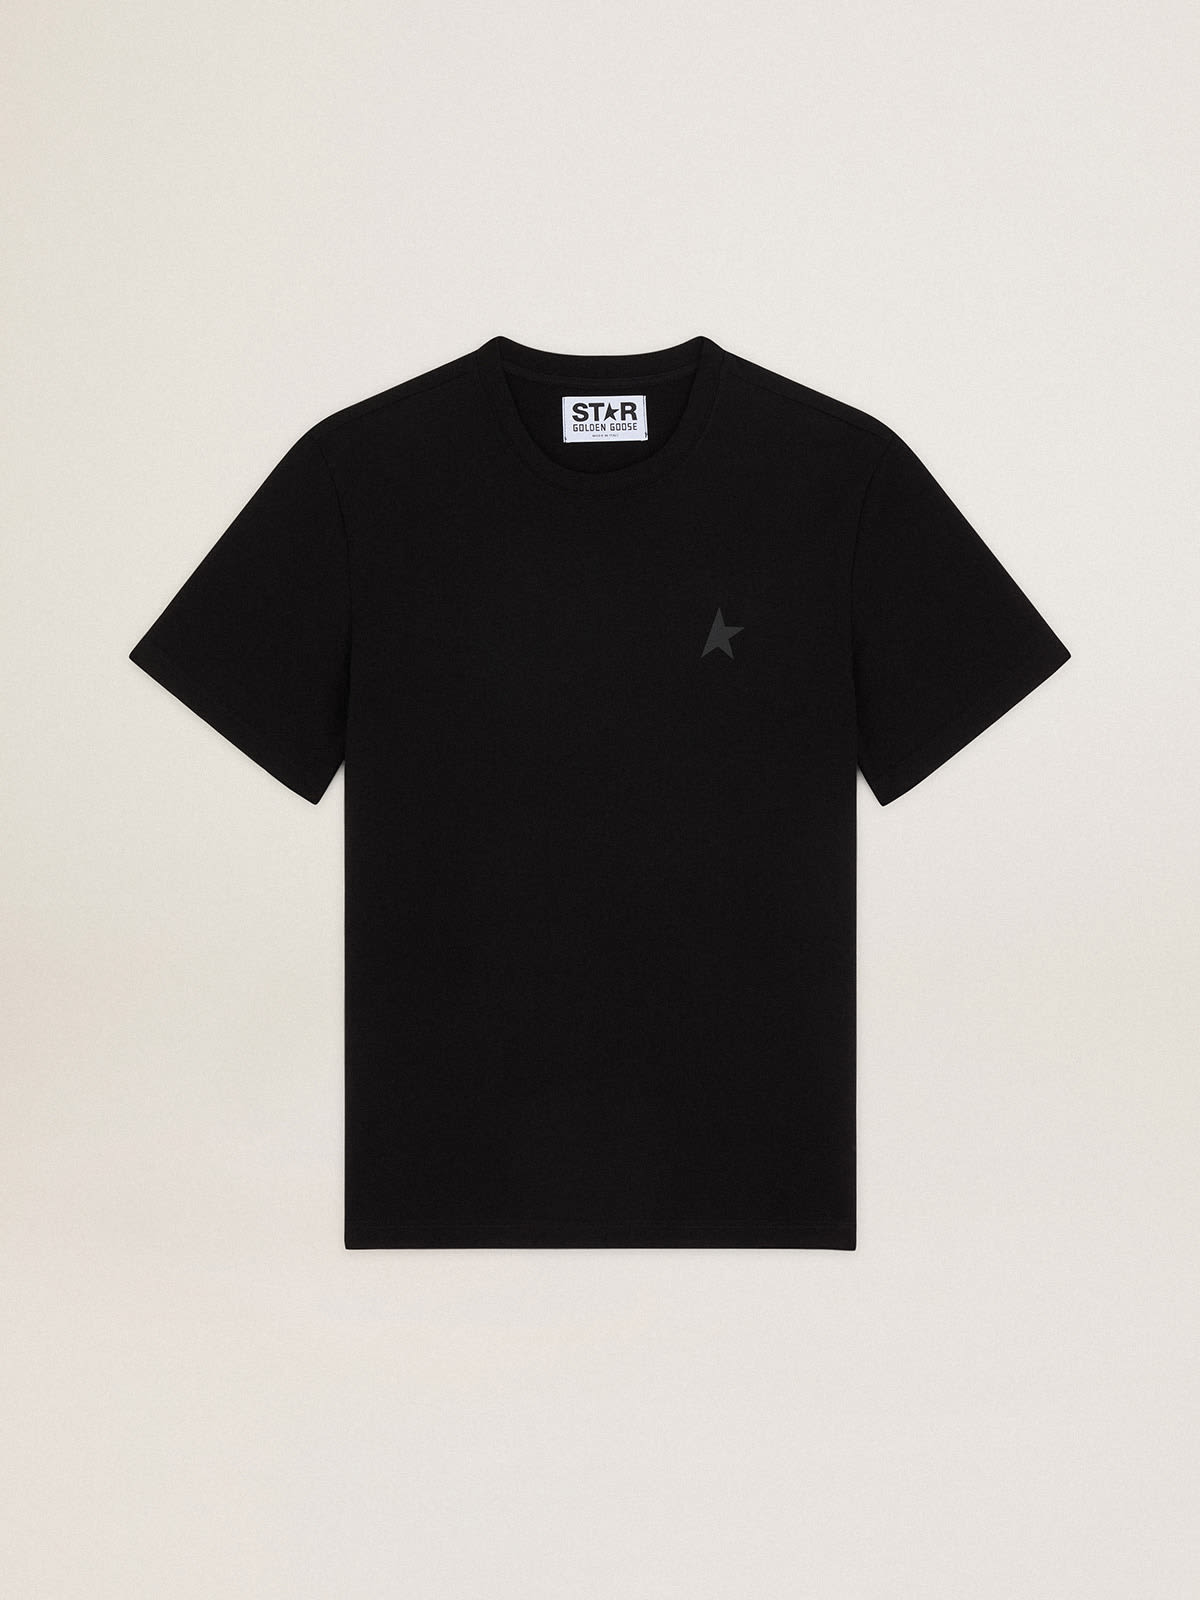 Golden Goose - Schwarzes T-Shirt aus der Star Collection mit Ton in Ton gehaltenem Stern auf der Vorderseite in 